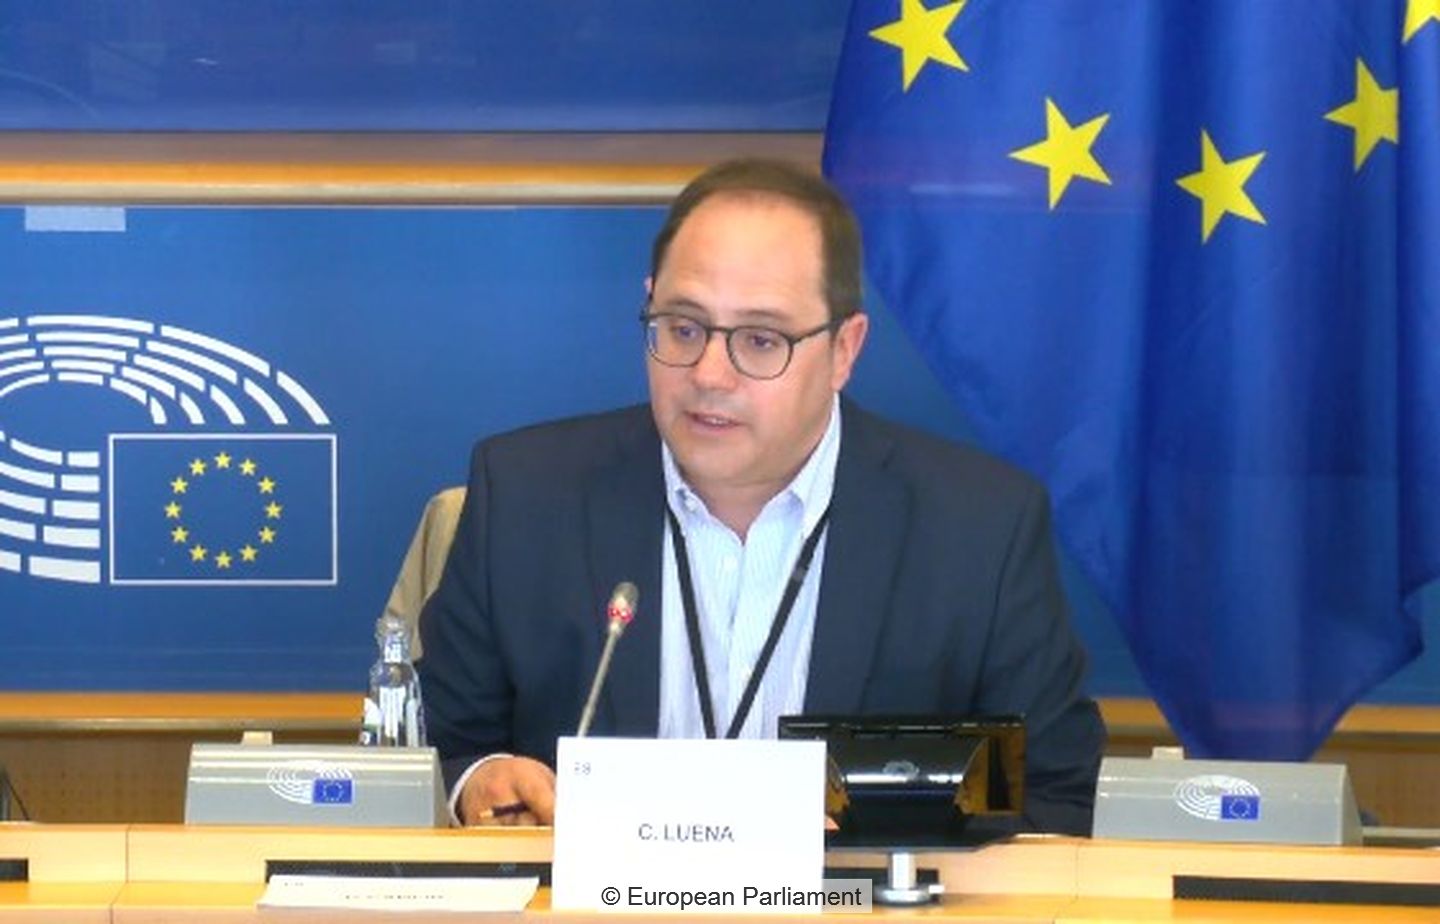 MEP César Luena, vice-chairmpan of the European Parliament's Environment Committee